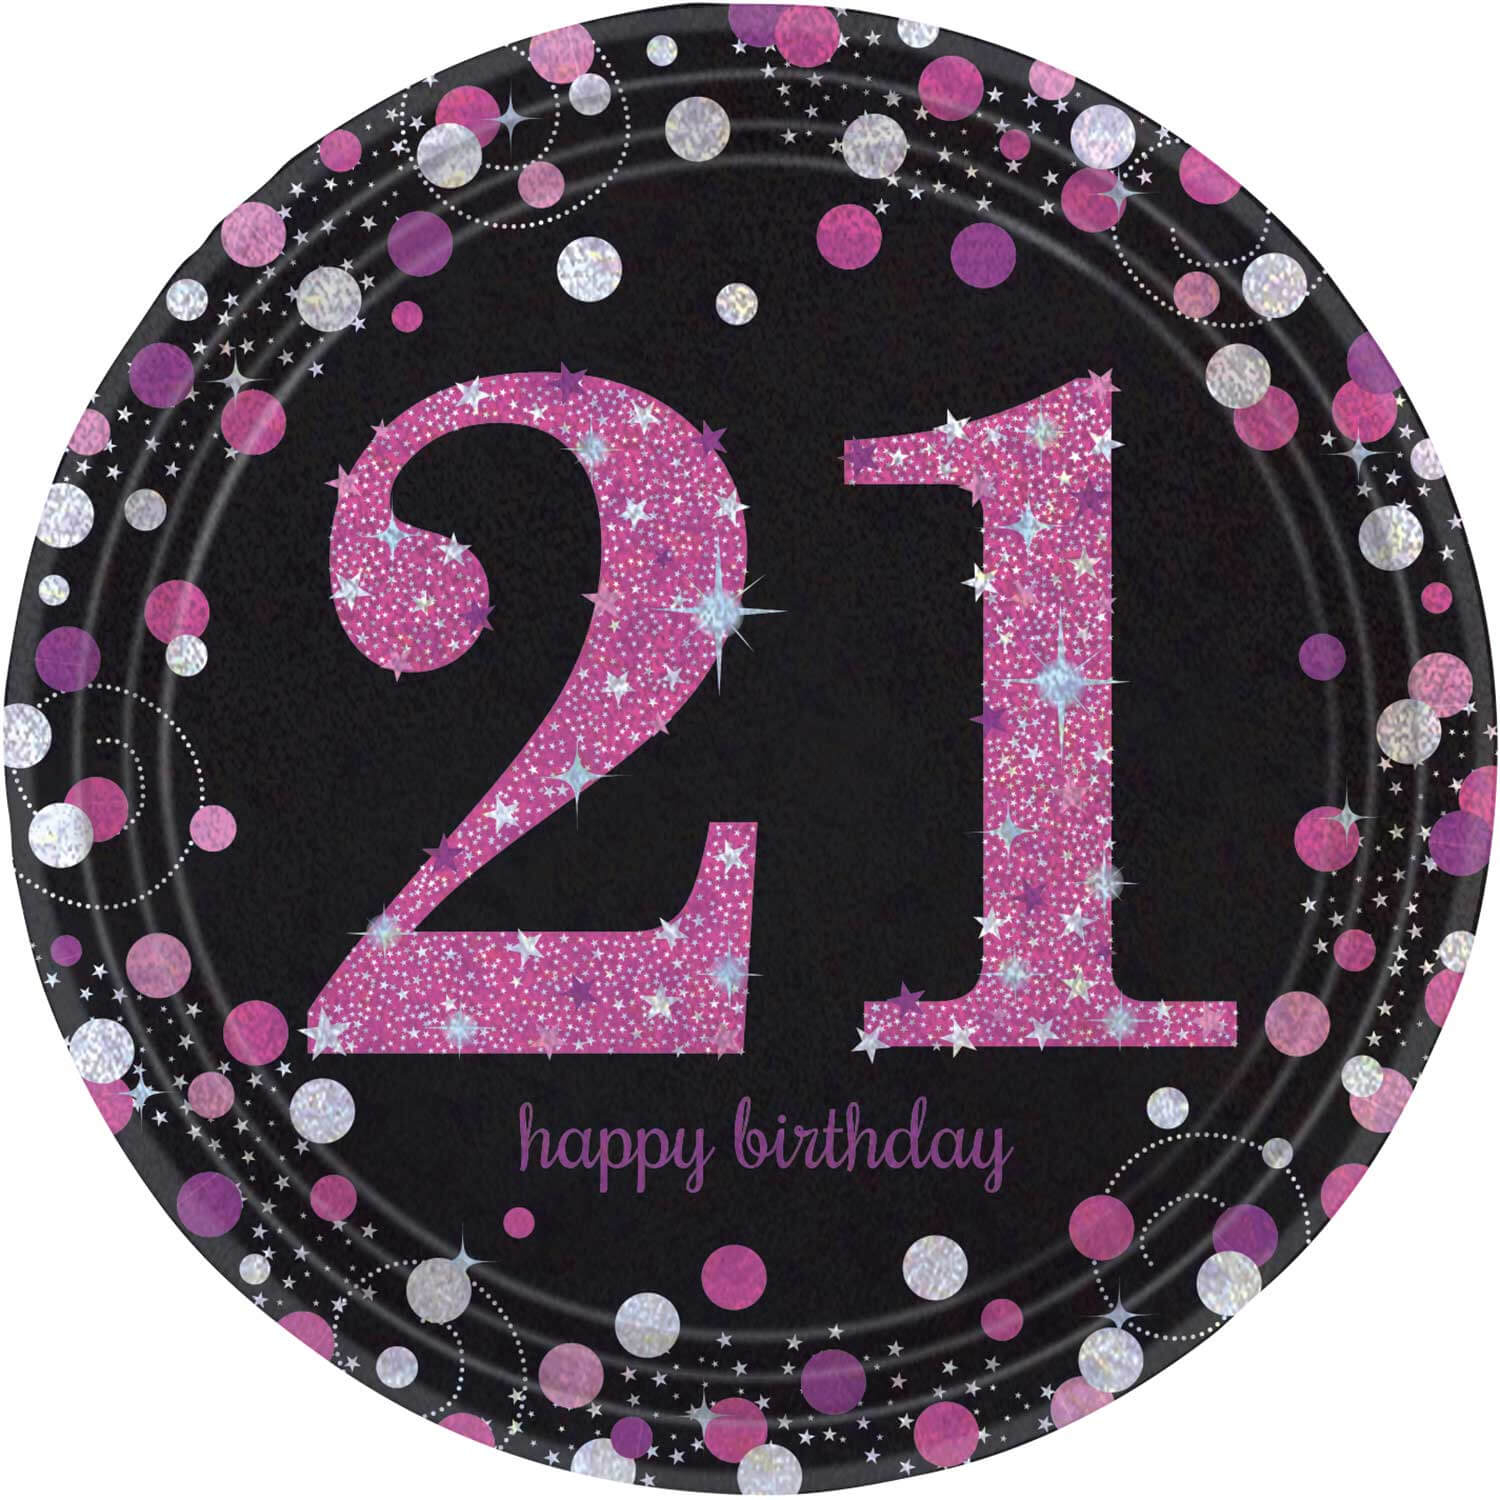 21 заказ за 21 день. С днем рождения 21. Поздравление с днем рождения 21 год. С днём рождения 21 год девушке. Открытка 21 год др.